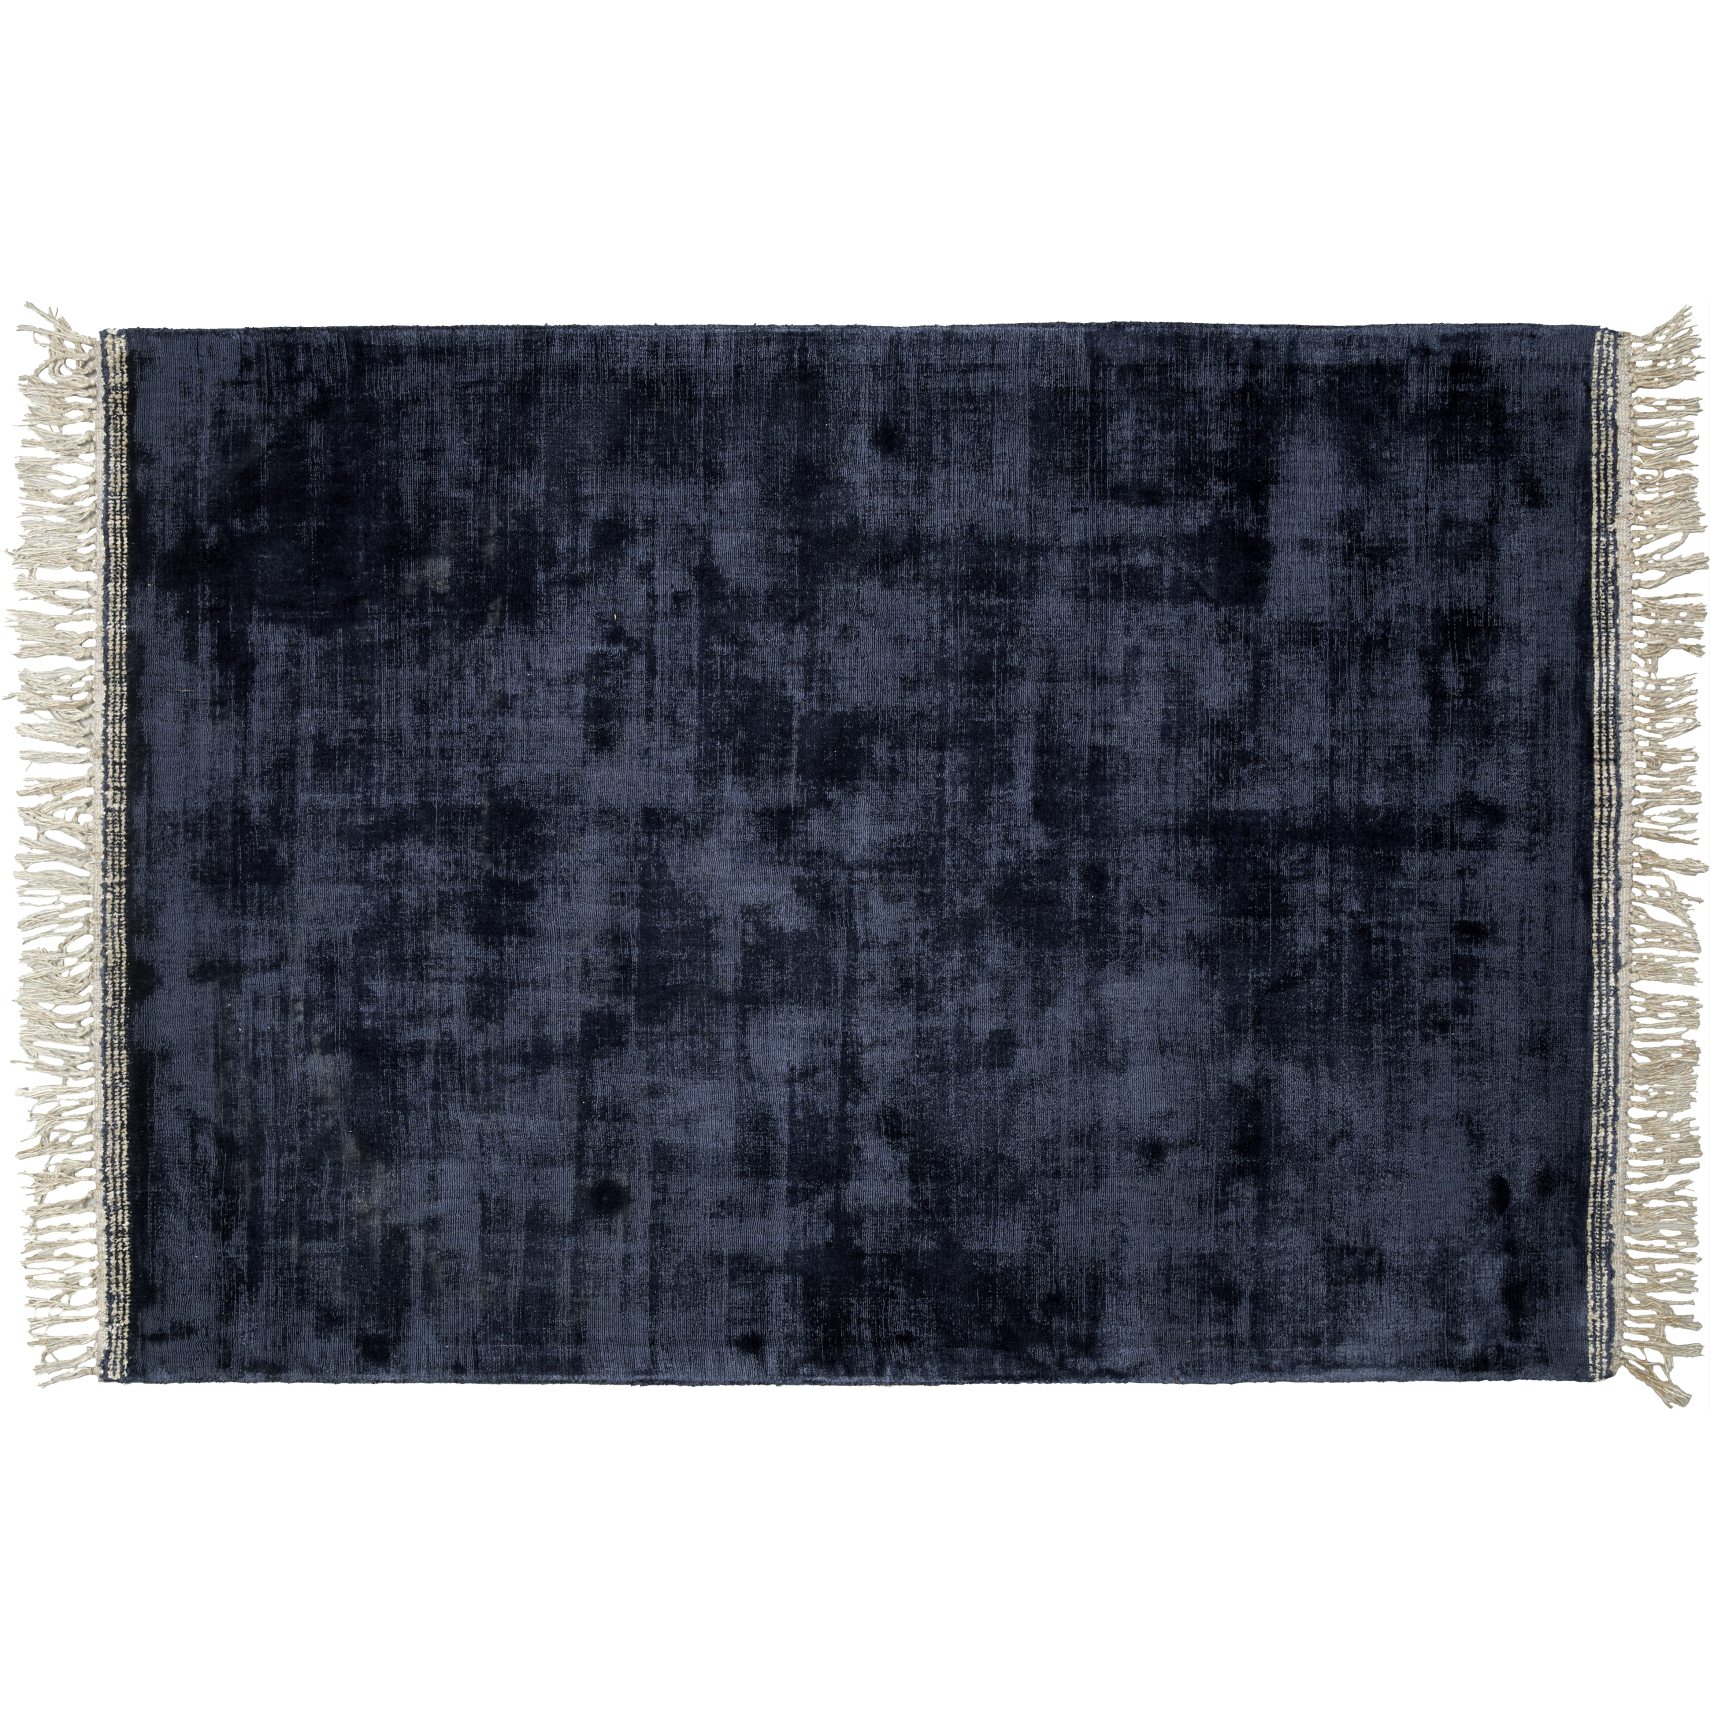 Topaz Tuftet tæppe 170 x 240 cm - Mørkeblå uld/viskose, strikmønster/prikket mønster og offwhite frynser